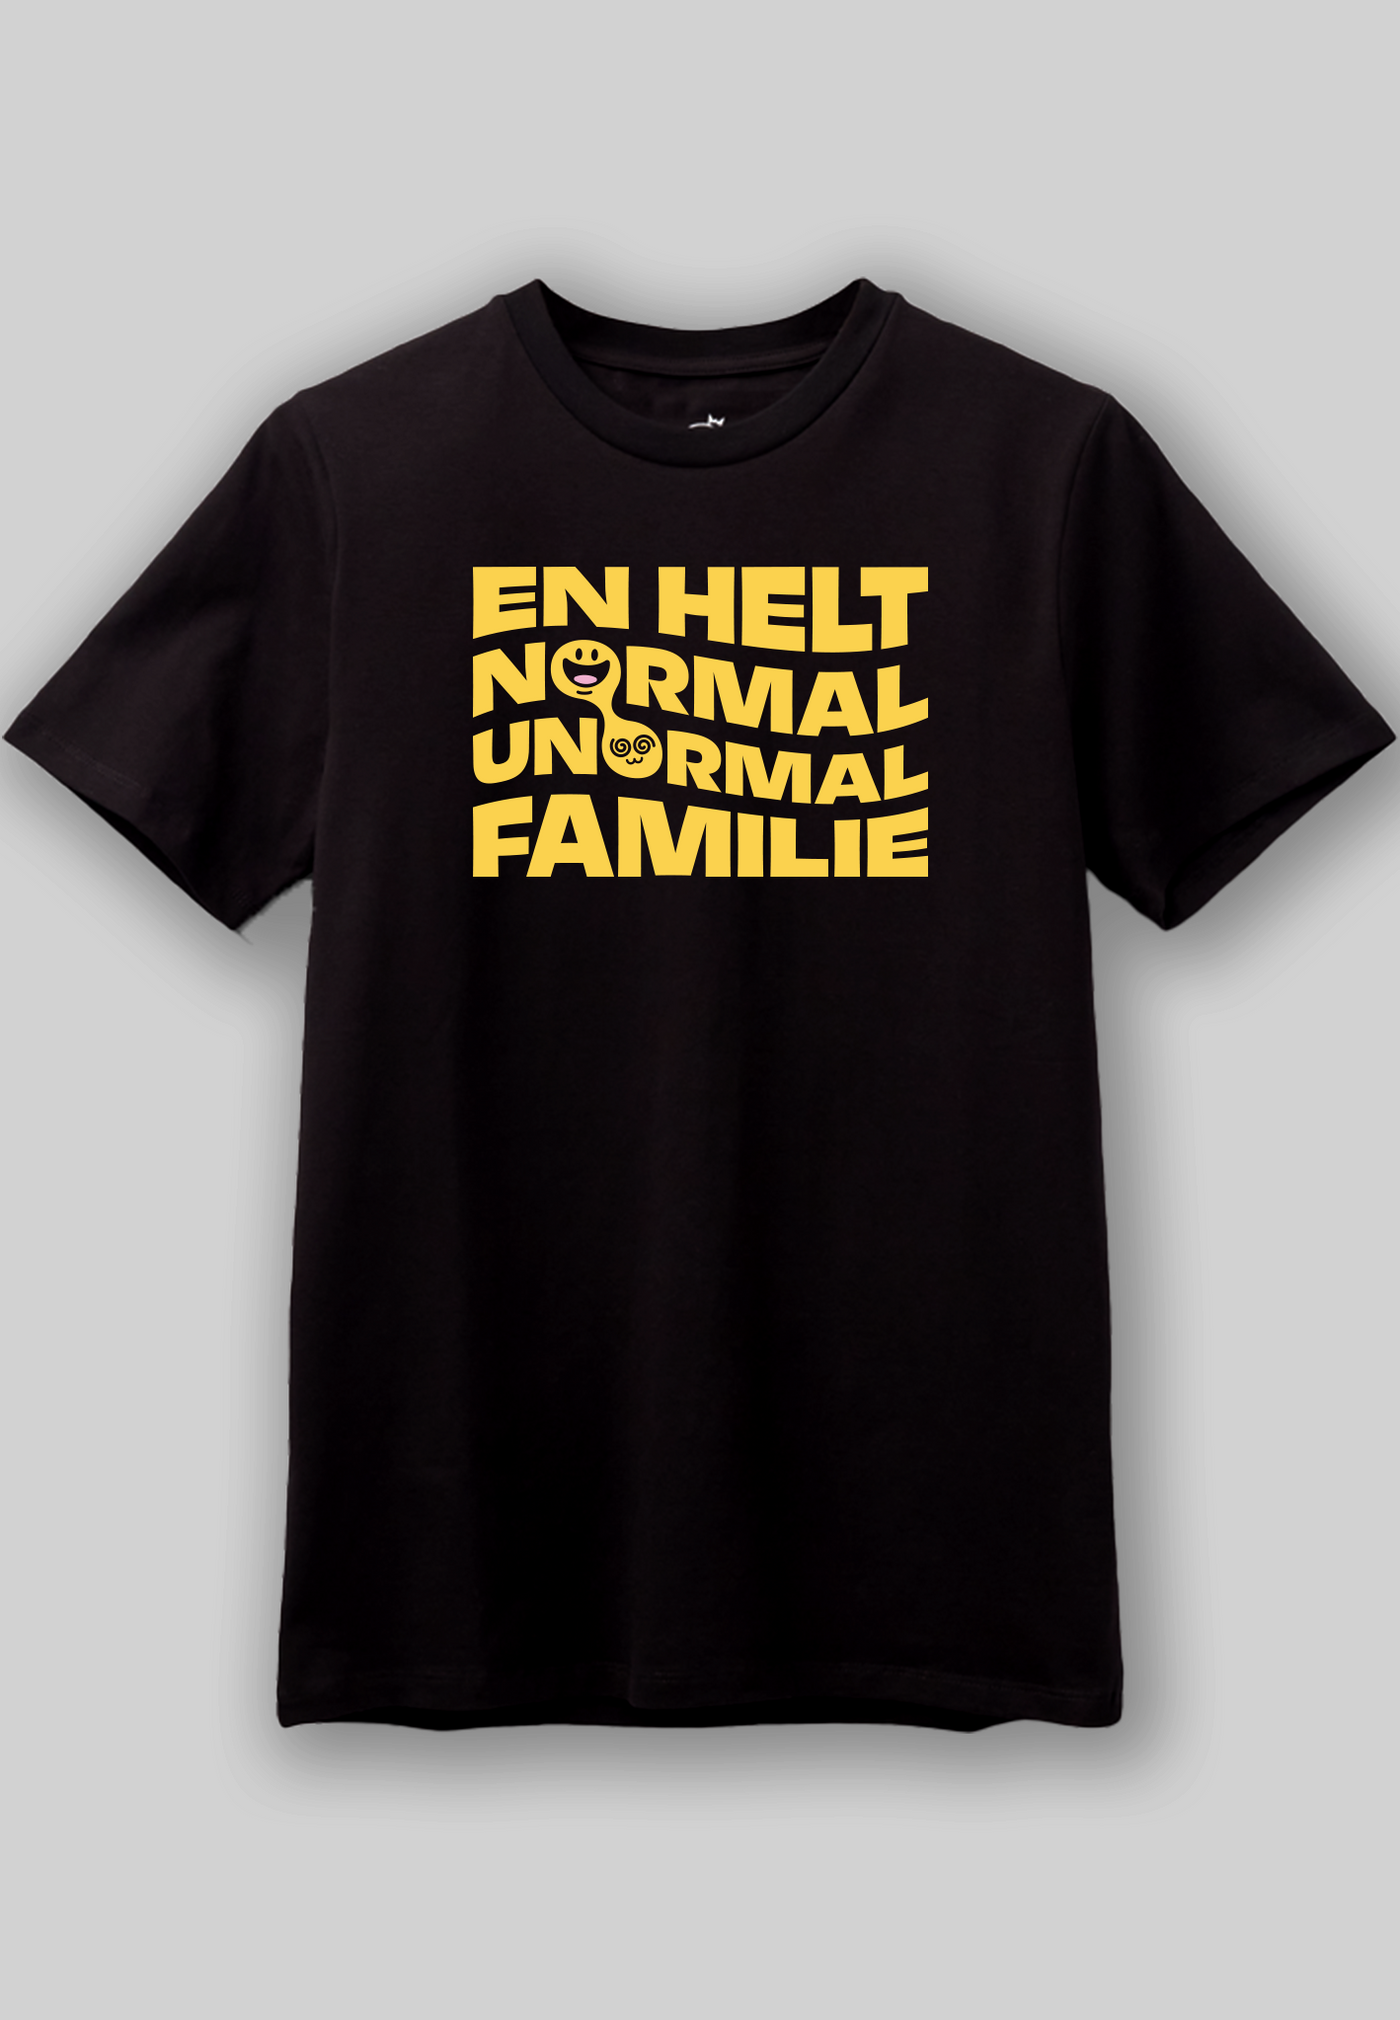 Familien Münster - "NORMAL / ABNORMAL FAMILY" - Svart t-skjorte